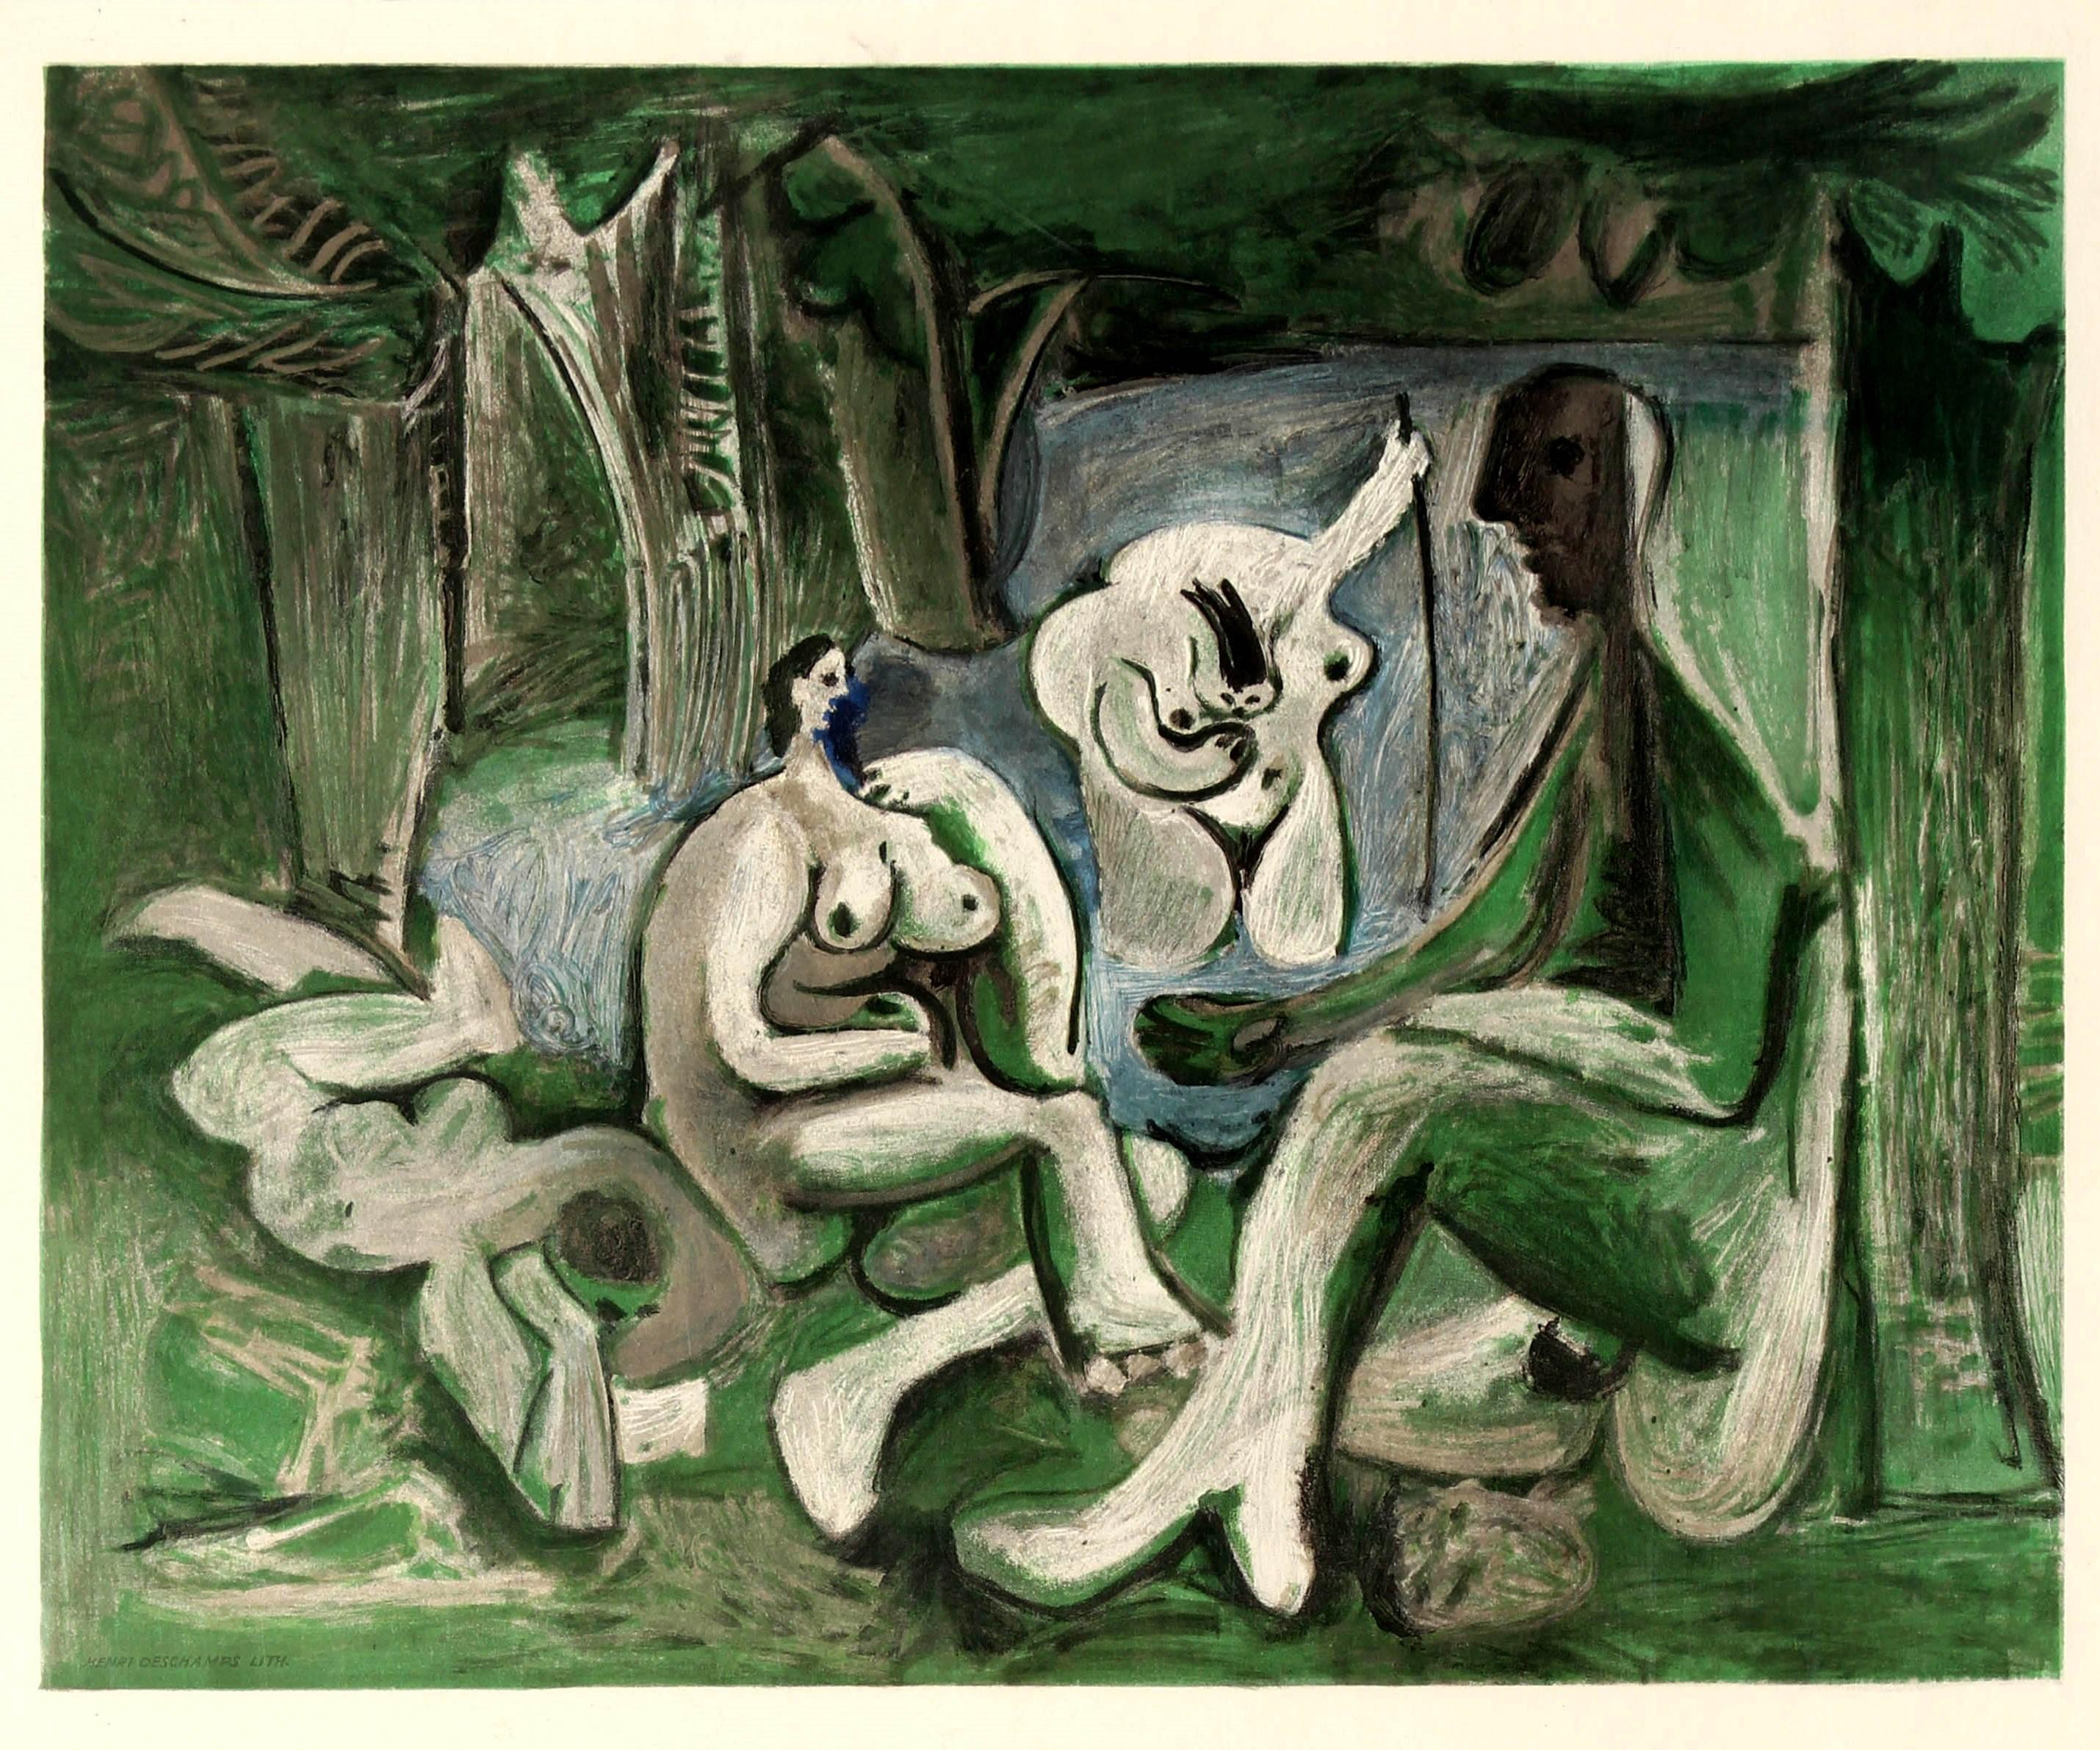 Originales Vintage-Werbeplakat für eine Kunstausstellung mit Werken des bedeutenden spanischen Künstlers und Bildhauers Pablo Picasso (1881-1973) unter dem Titel Le Dejeuner sur l'Herbe / Mittagessen im Gras 1960-1961 in der Galerie Louise Leiris 47